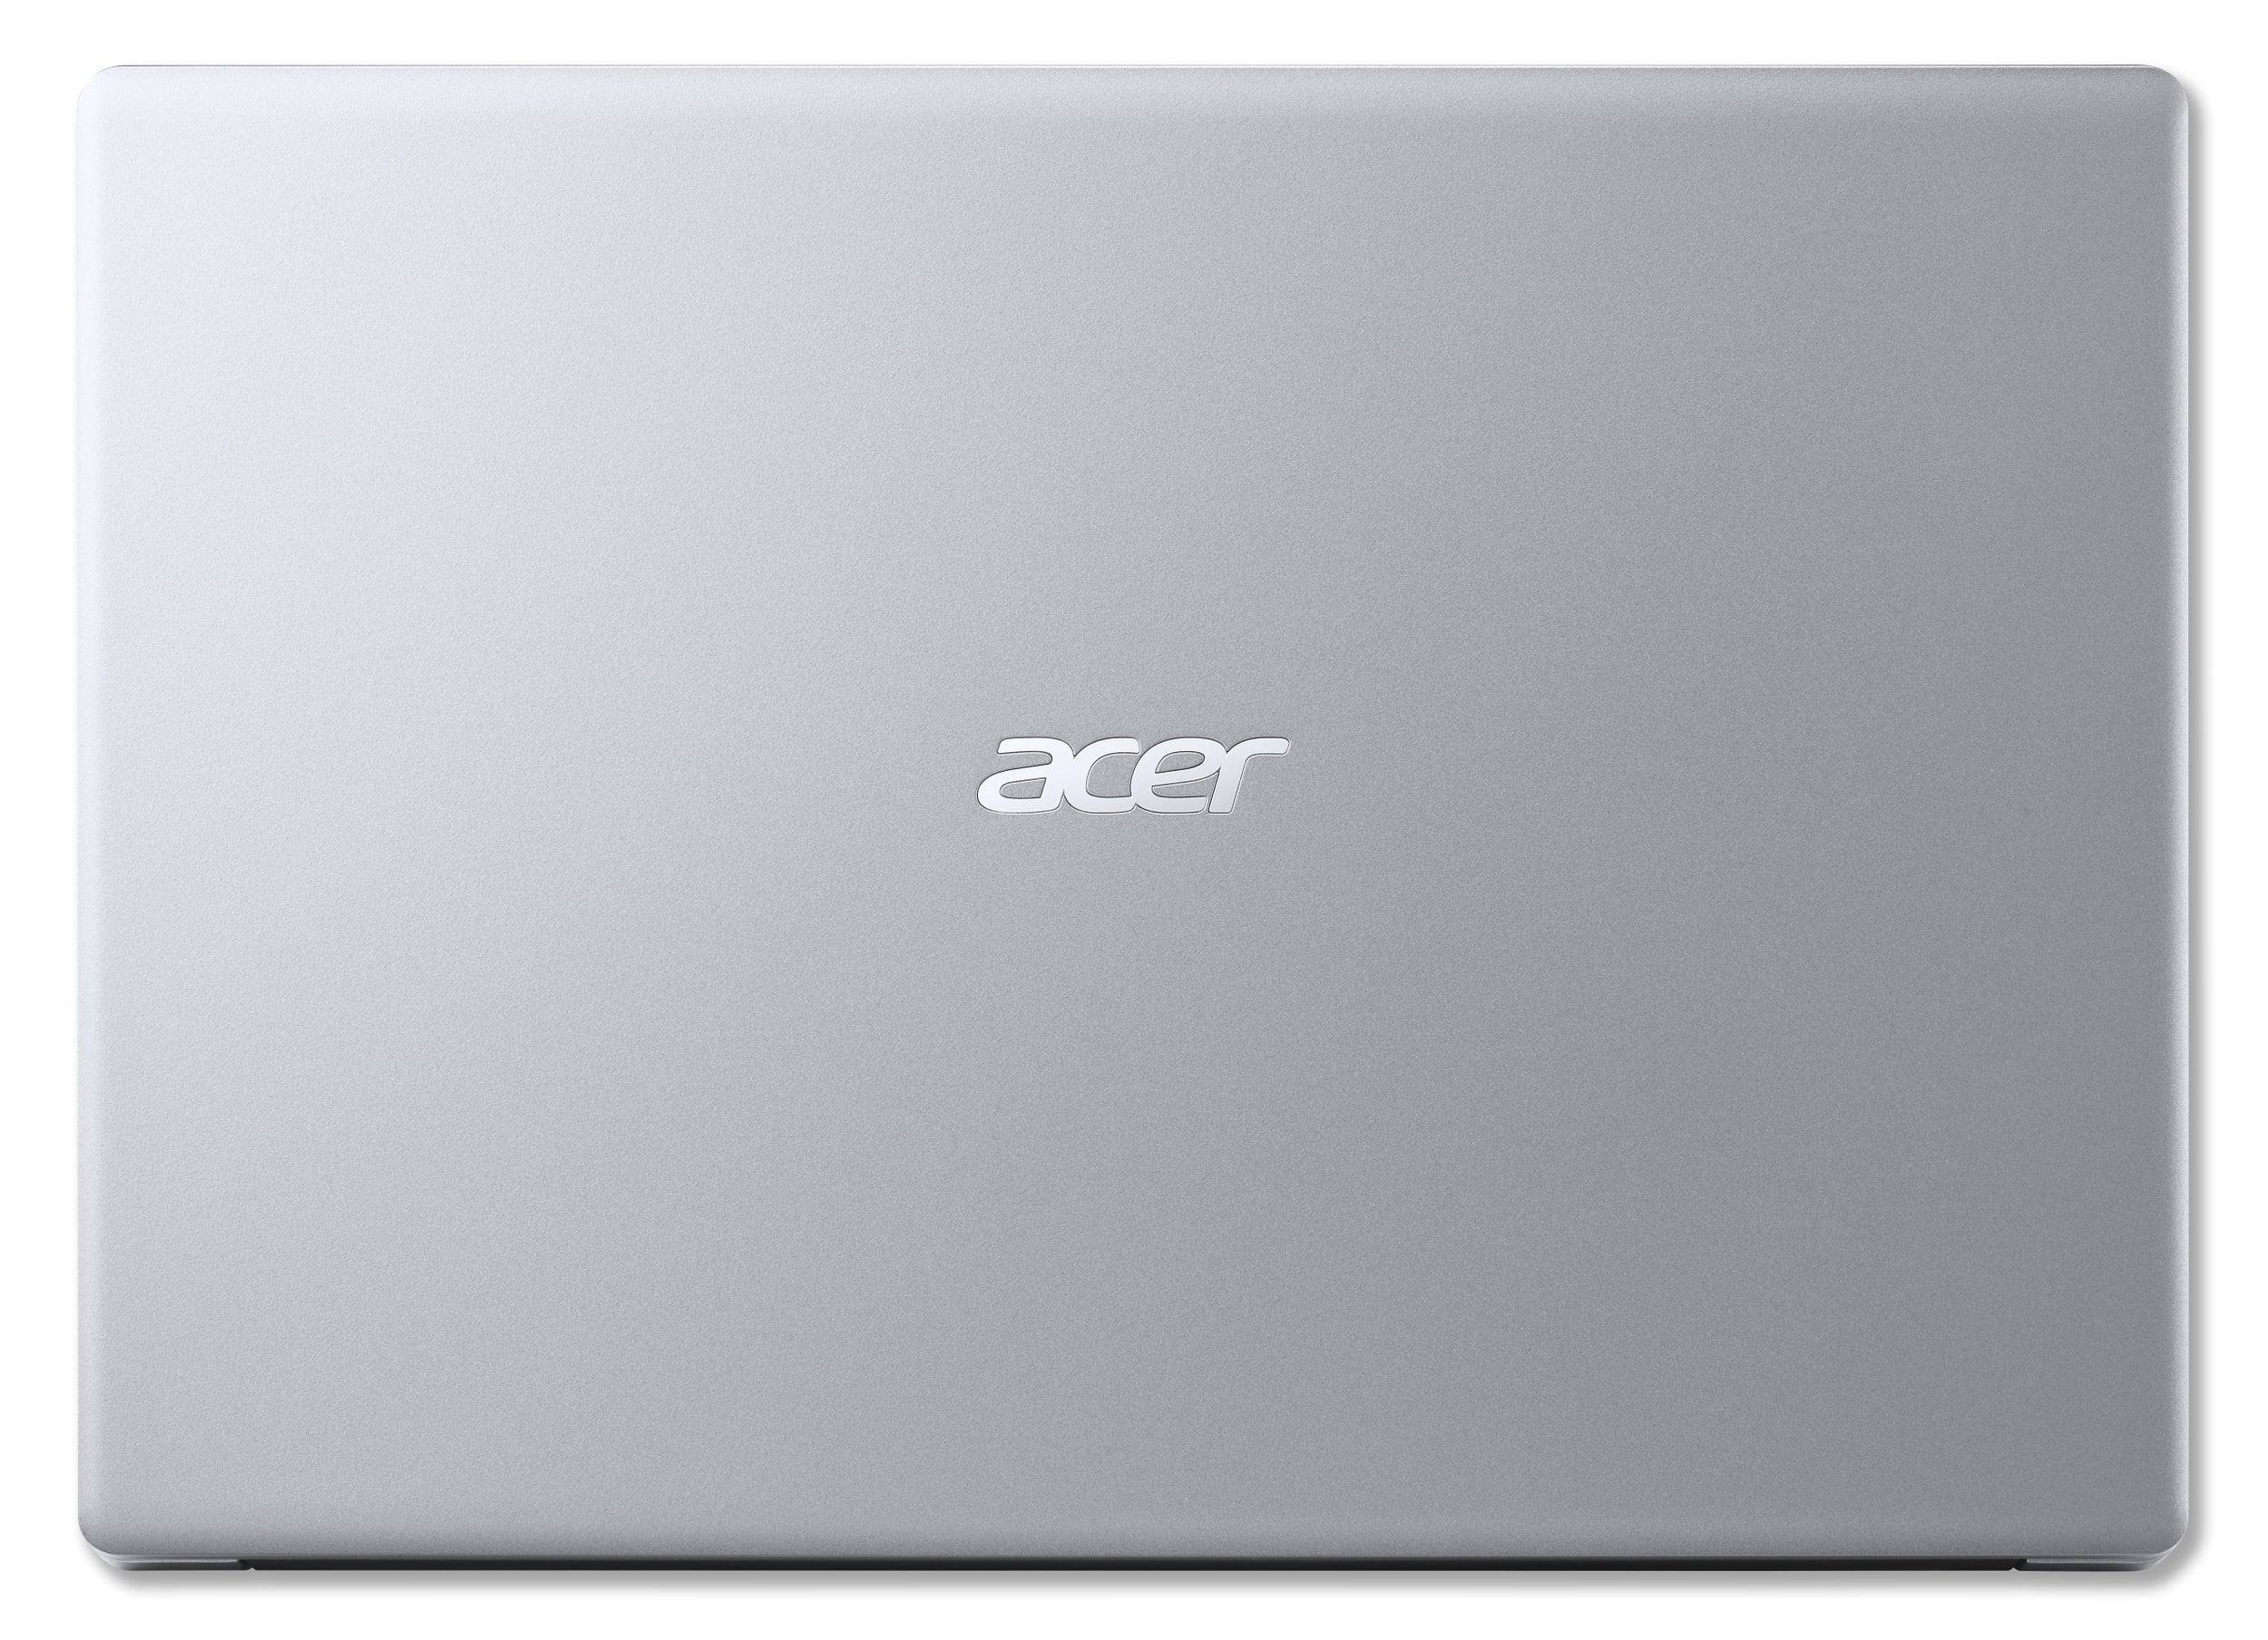 Computadora Portátil Acer A114-33-C2N3 Laptop Aspire Pulgadas Hd Intel Celeron N4500 4Gb 128Gb Emmc No Exp Win 10H Año De Garantia En Centro Servicio + Seguro Gratis